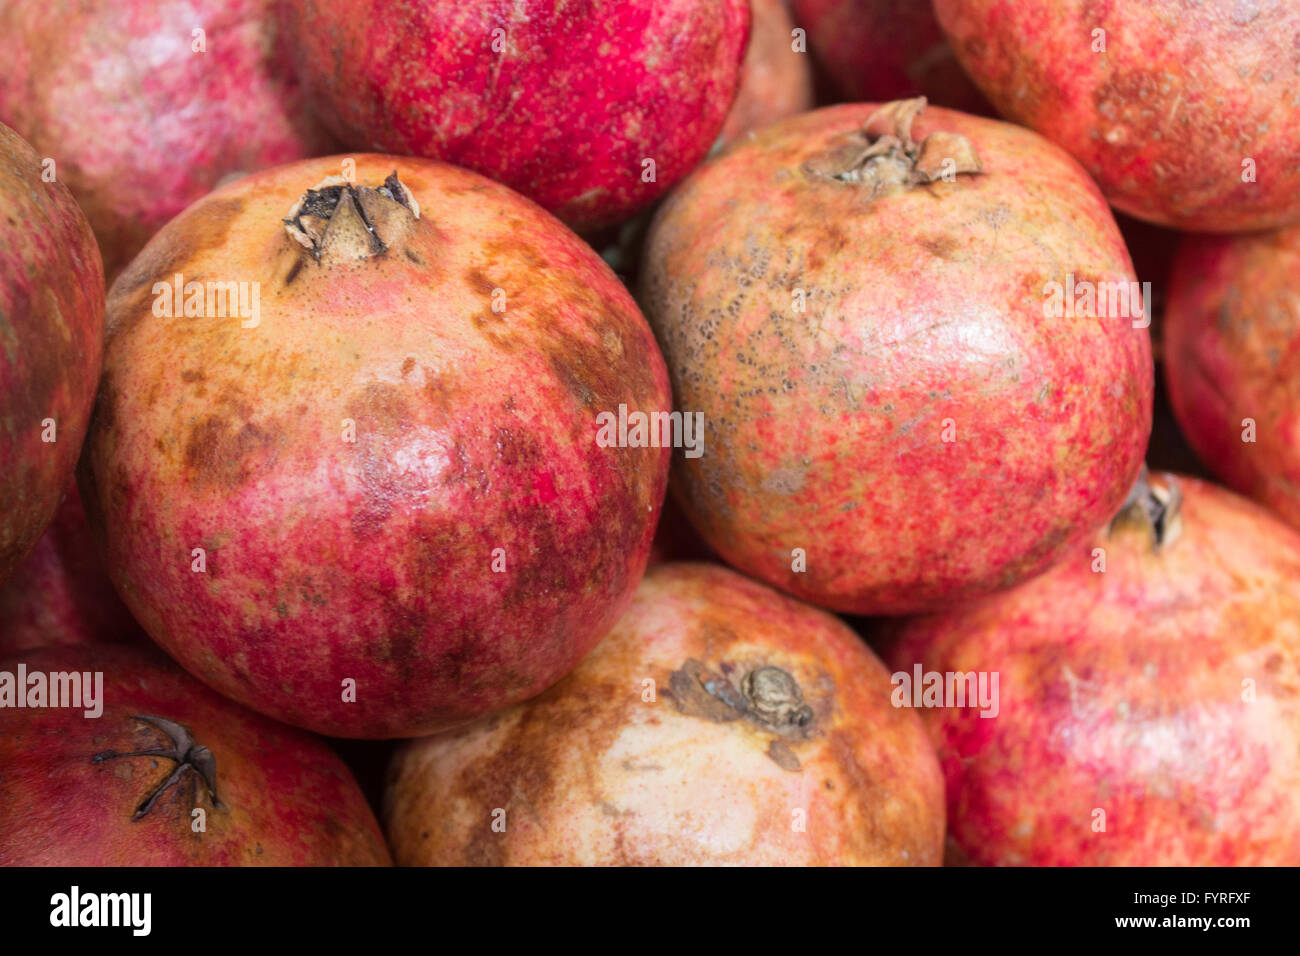 pomegranates /grenadine fruits Stock Photo